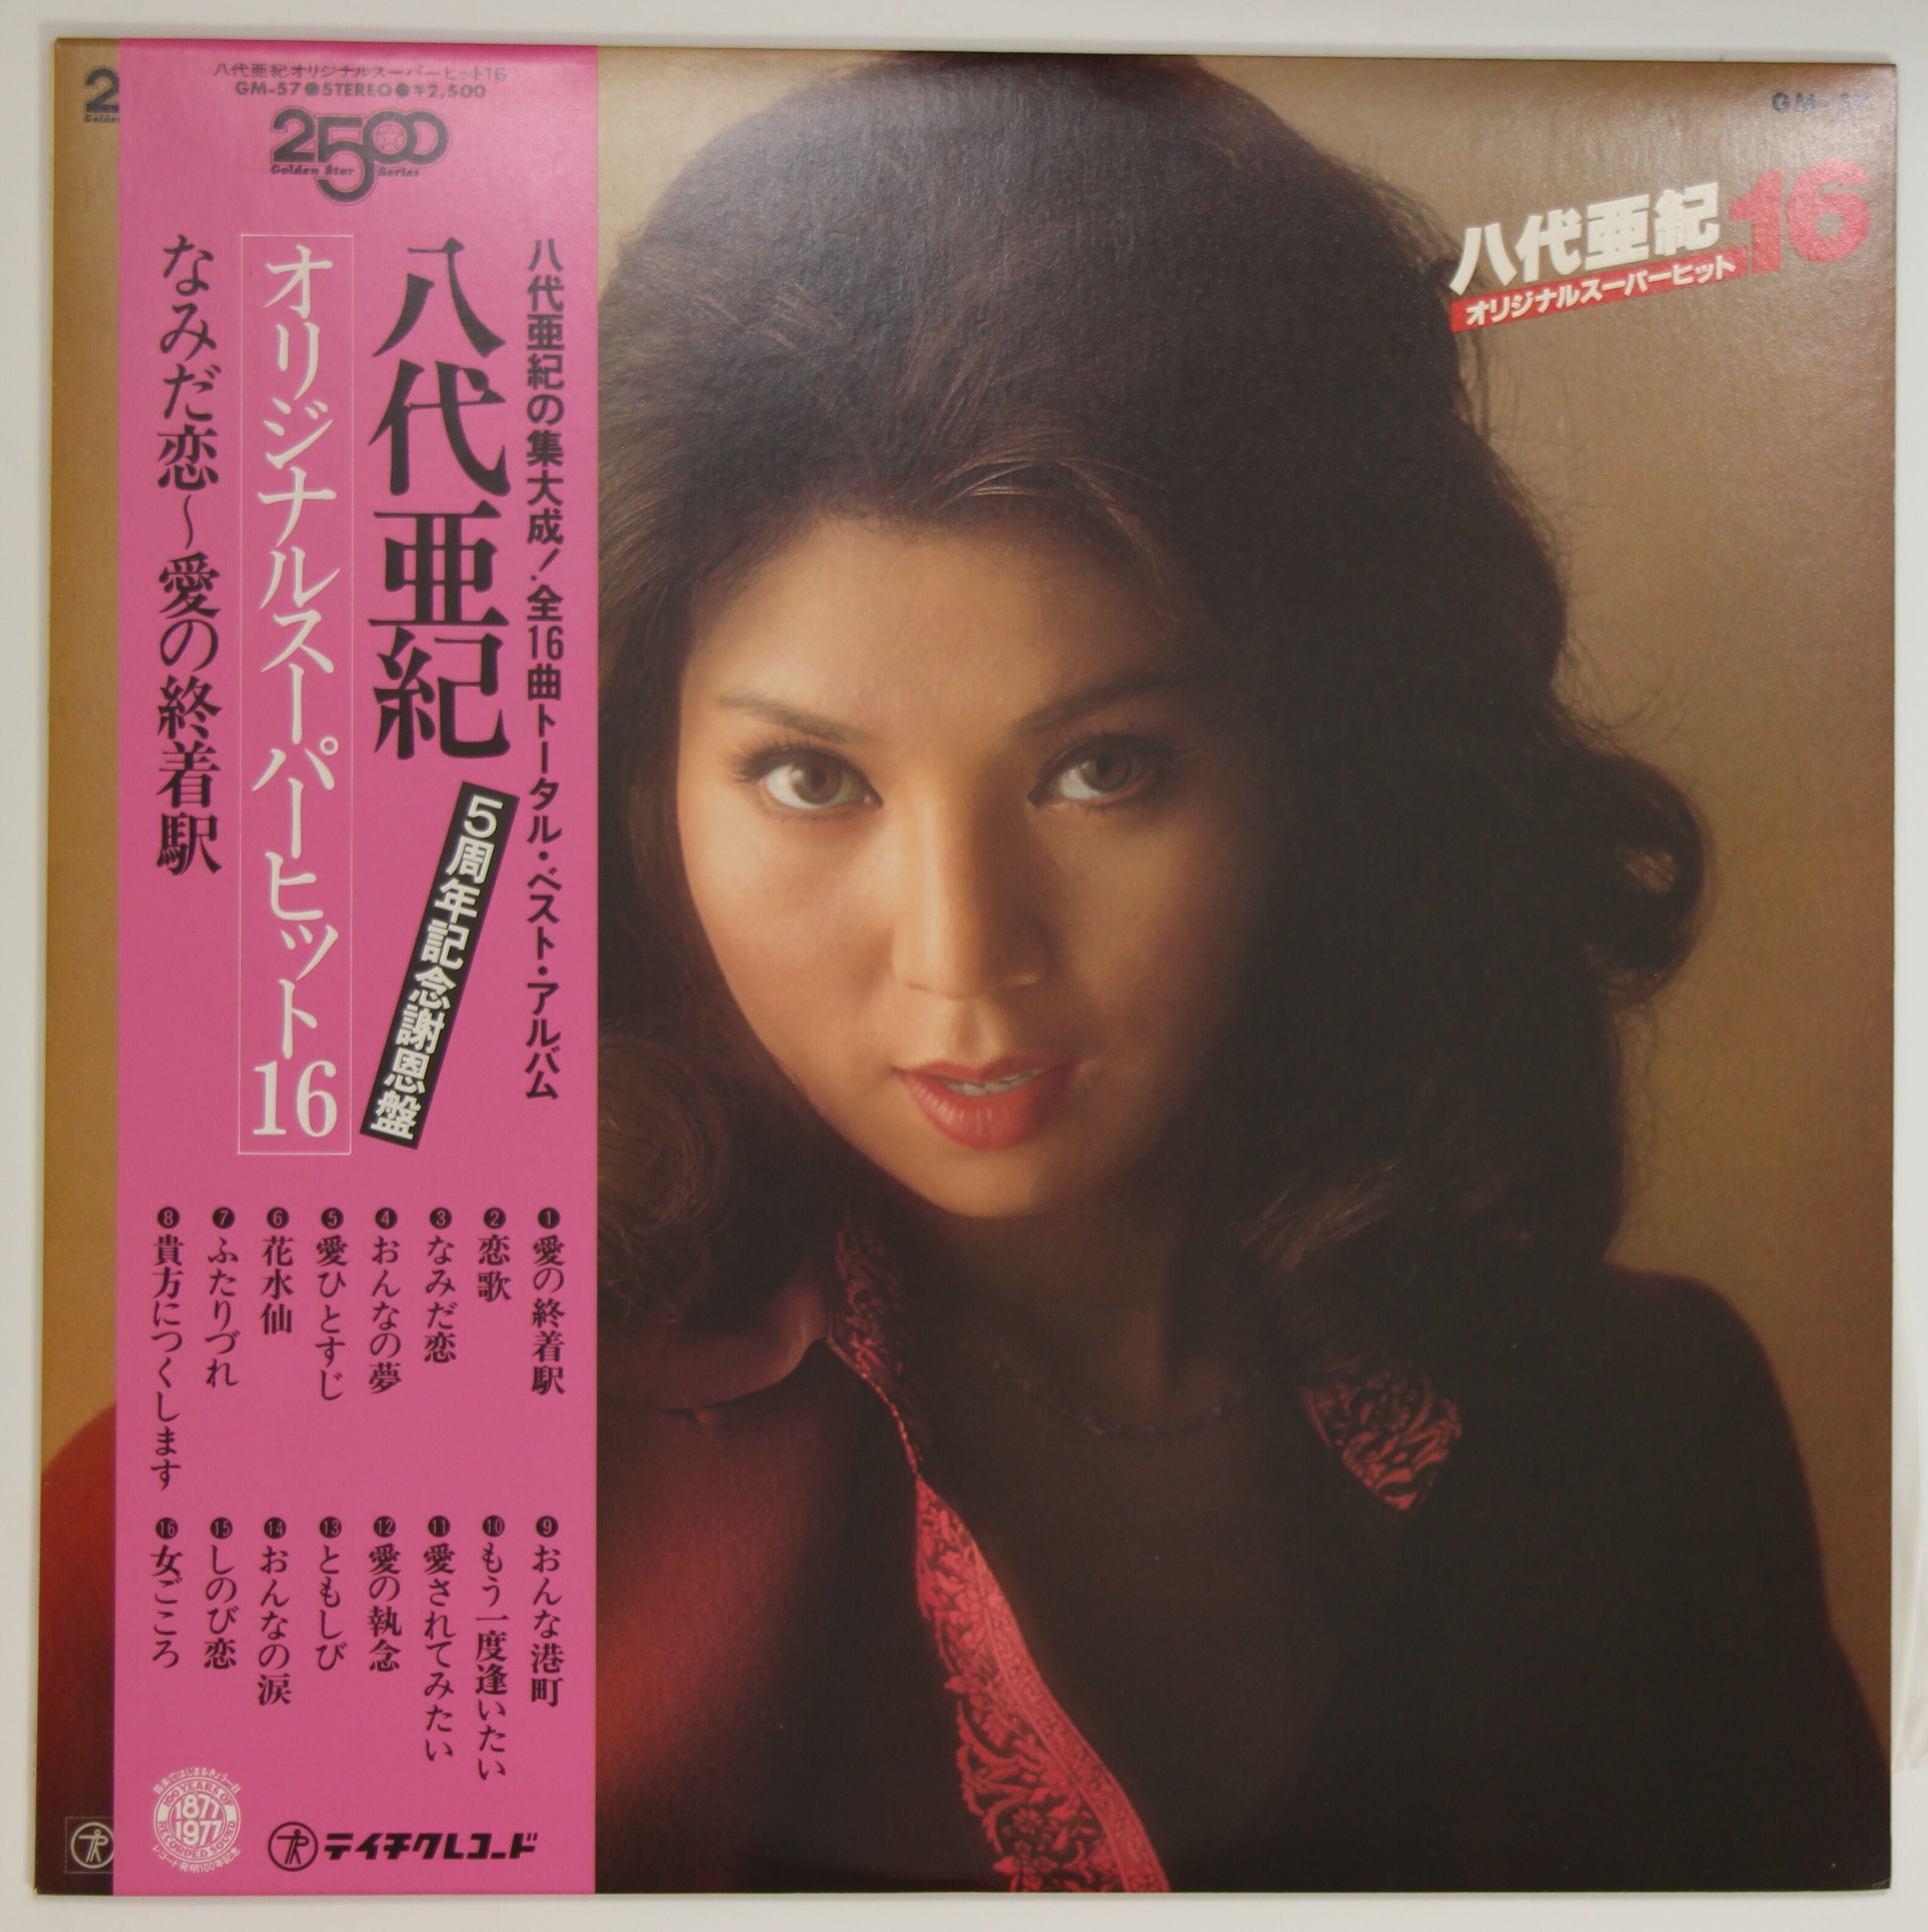 八代亜紀 / オリジナルスーパーヒット16 – かすみレコード